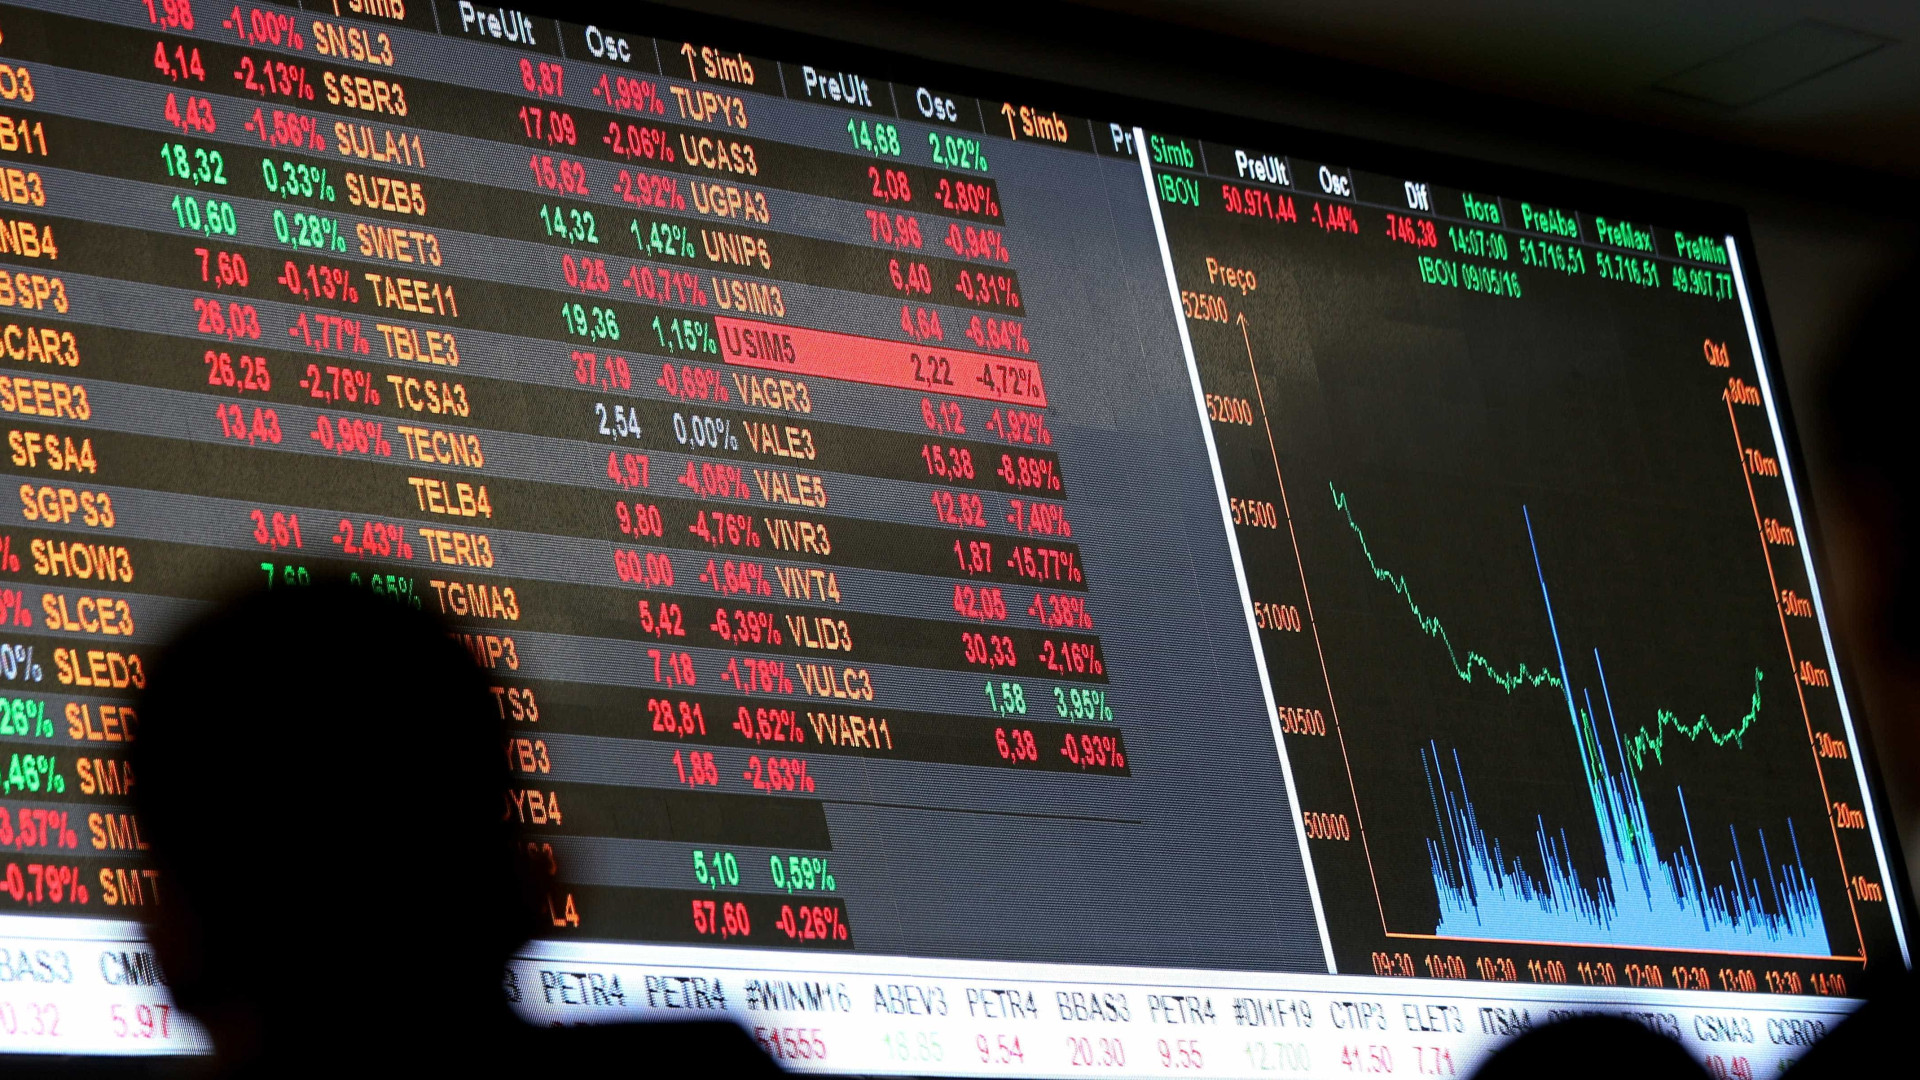 Bolsa brasileira abre em queda de 10% e pânico toma conta dos mercados